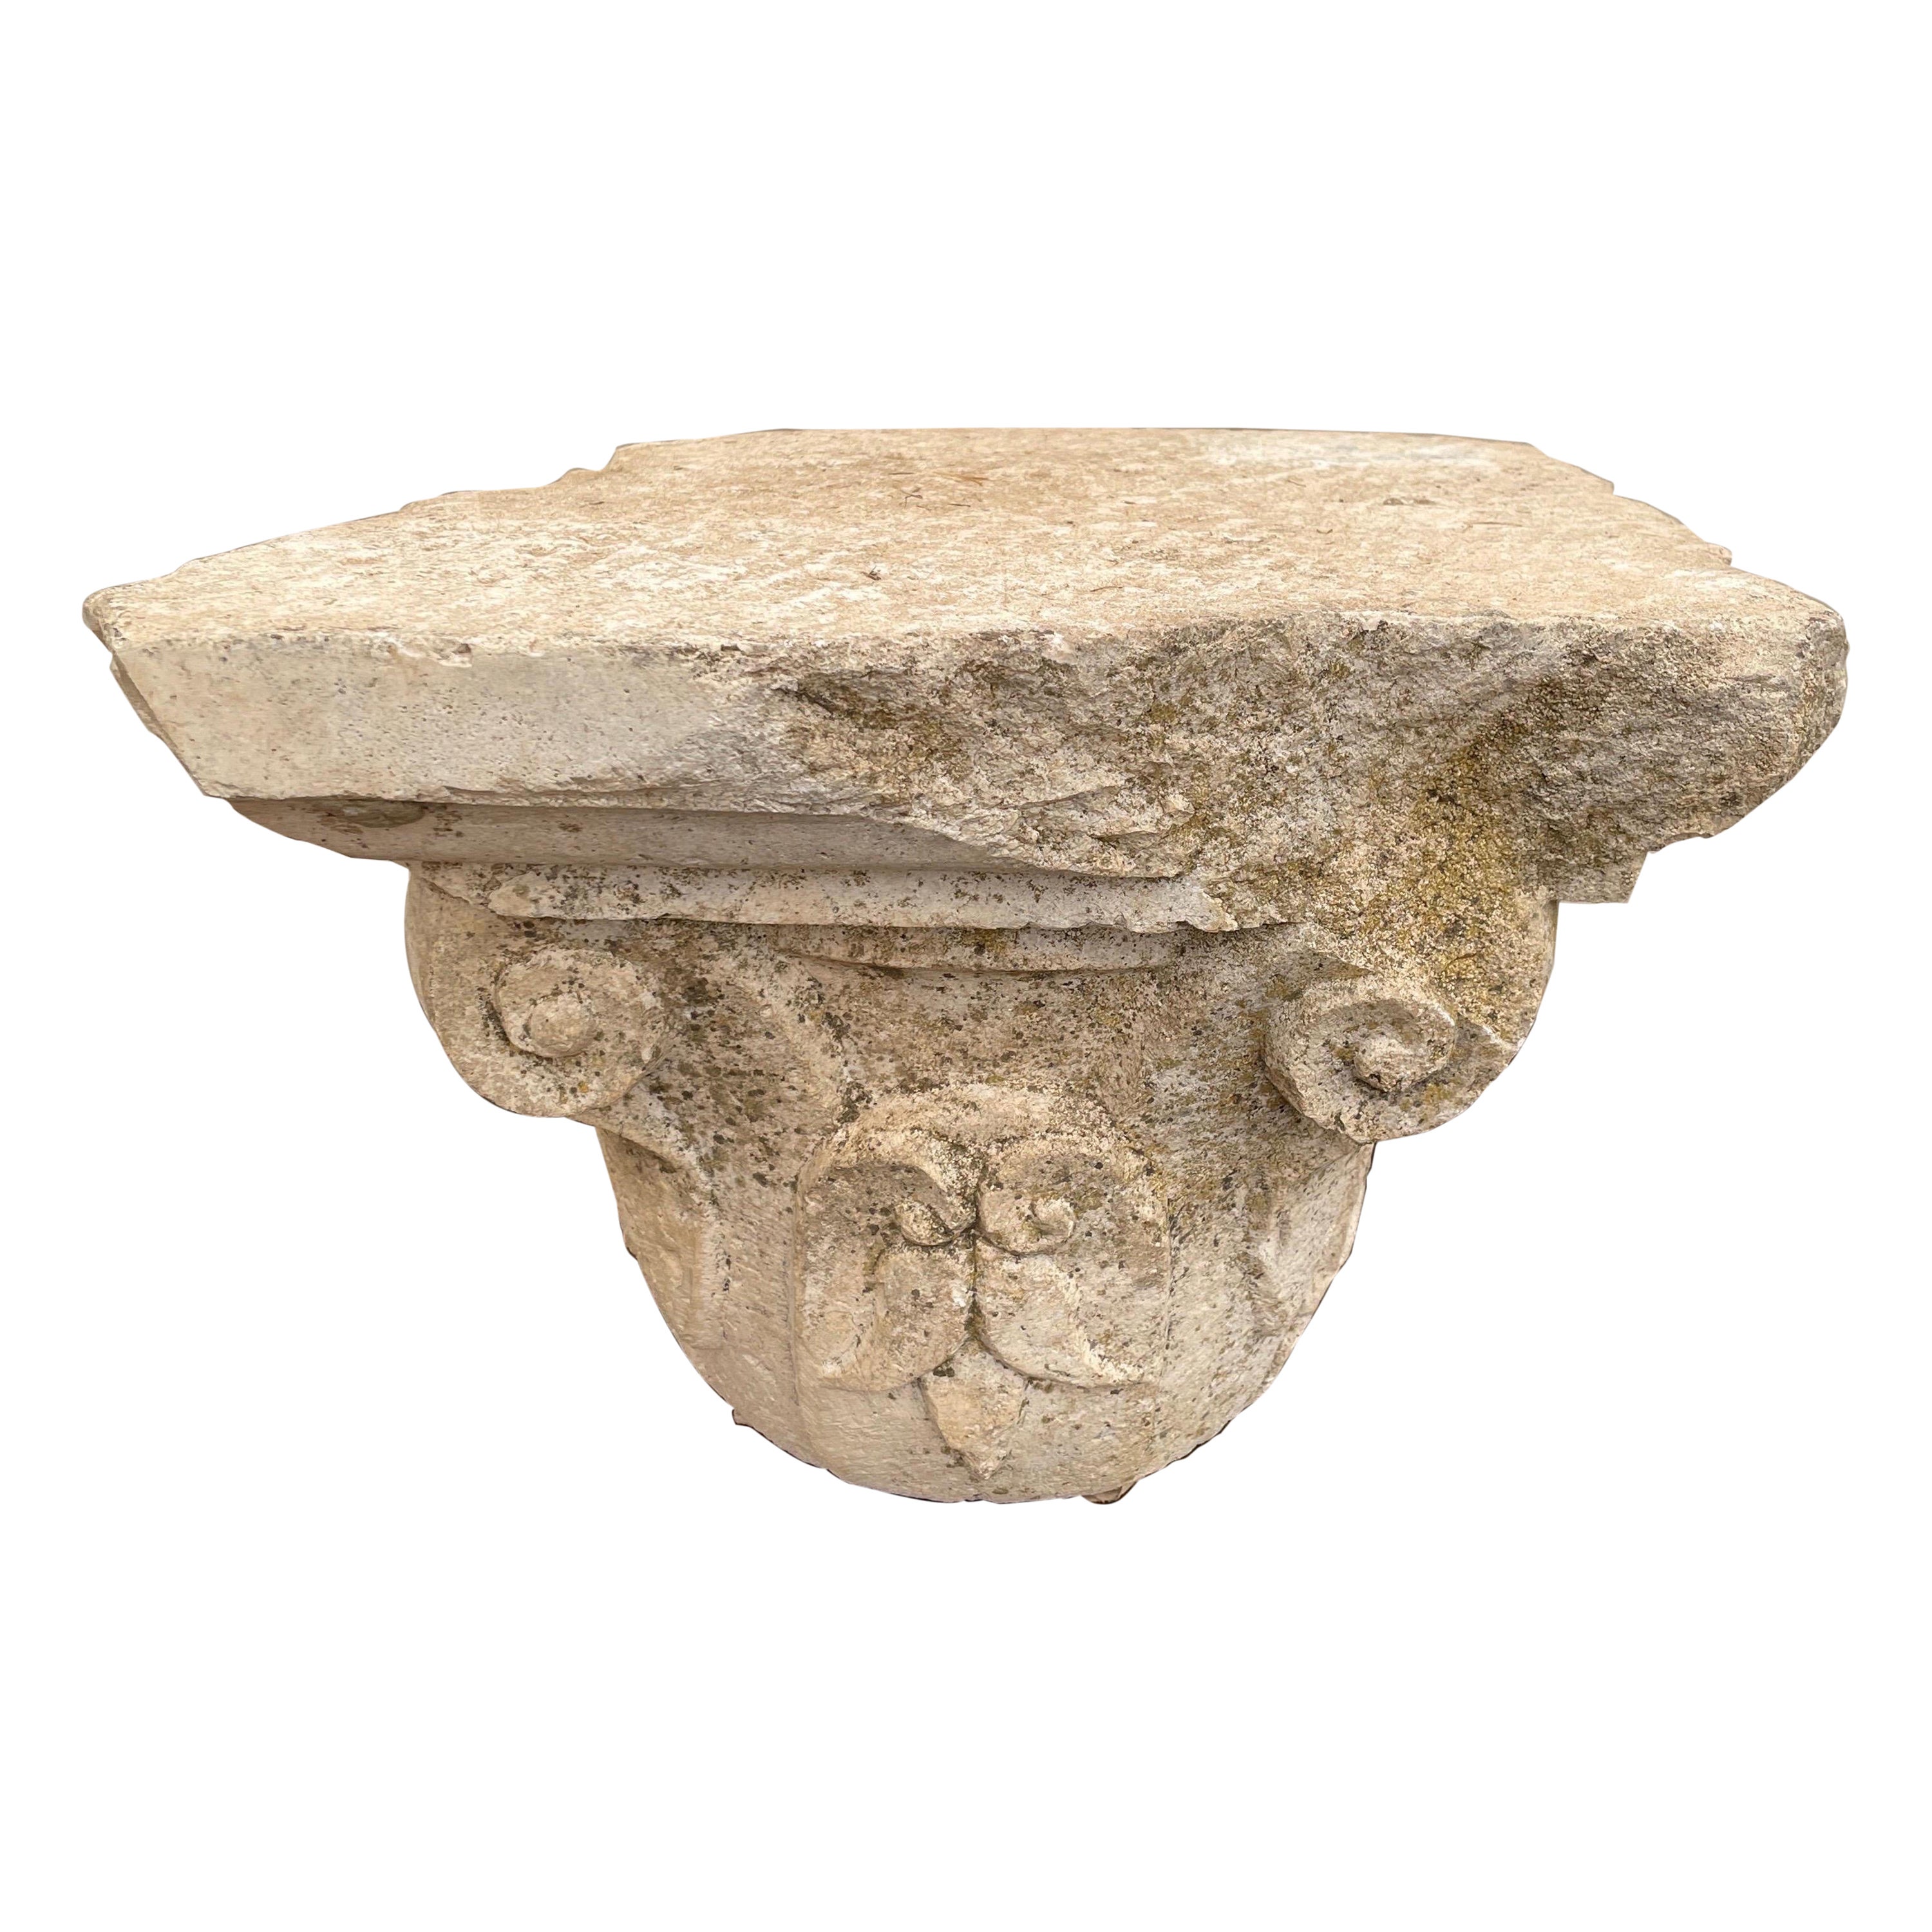 Capitale en pierre calcaire du 17e siècle provenant de Séville, Espagne